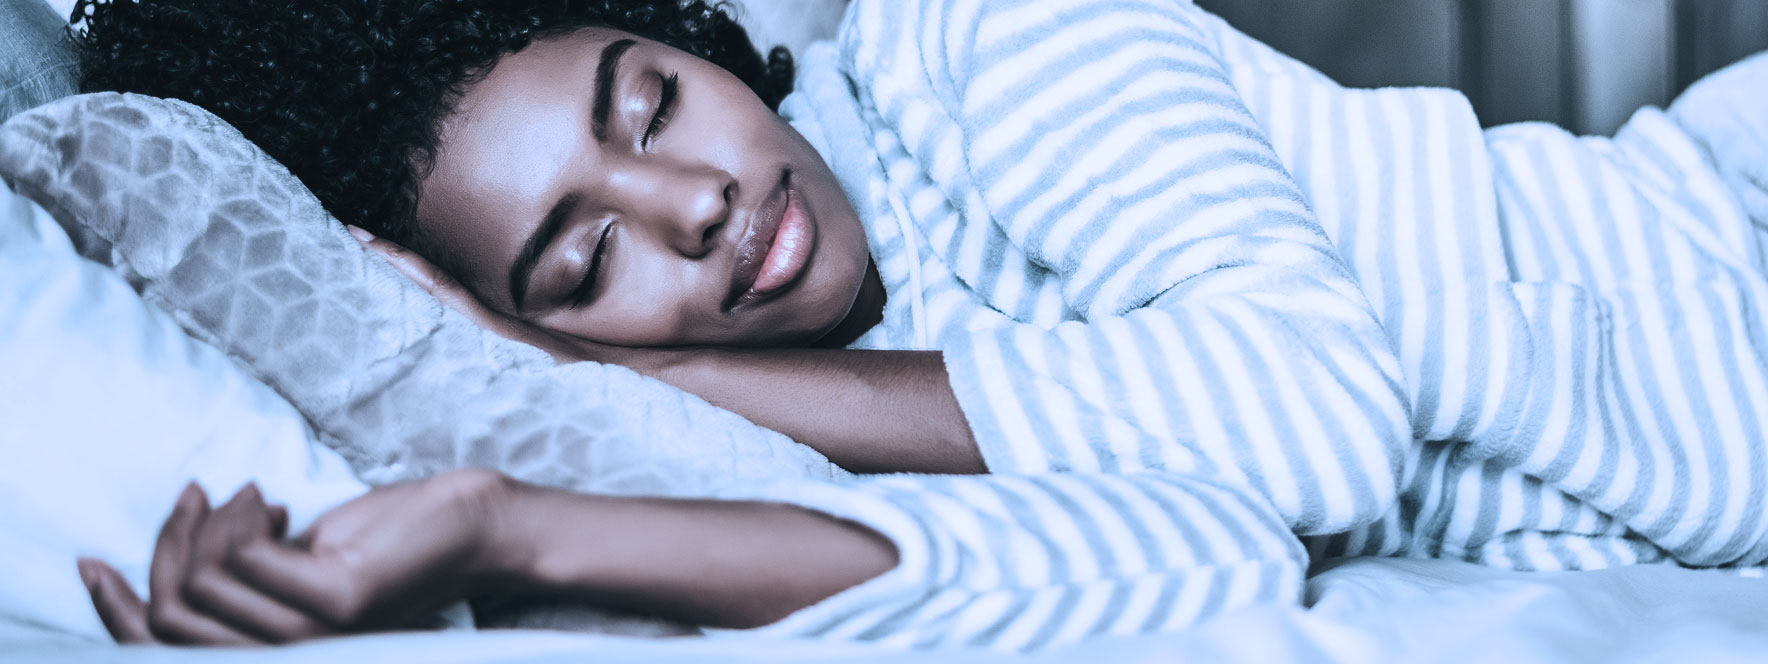 Dormir pour vaincre la léthargie musculaire - Blogue du Réseau